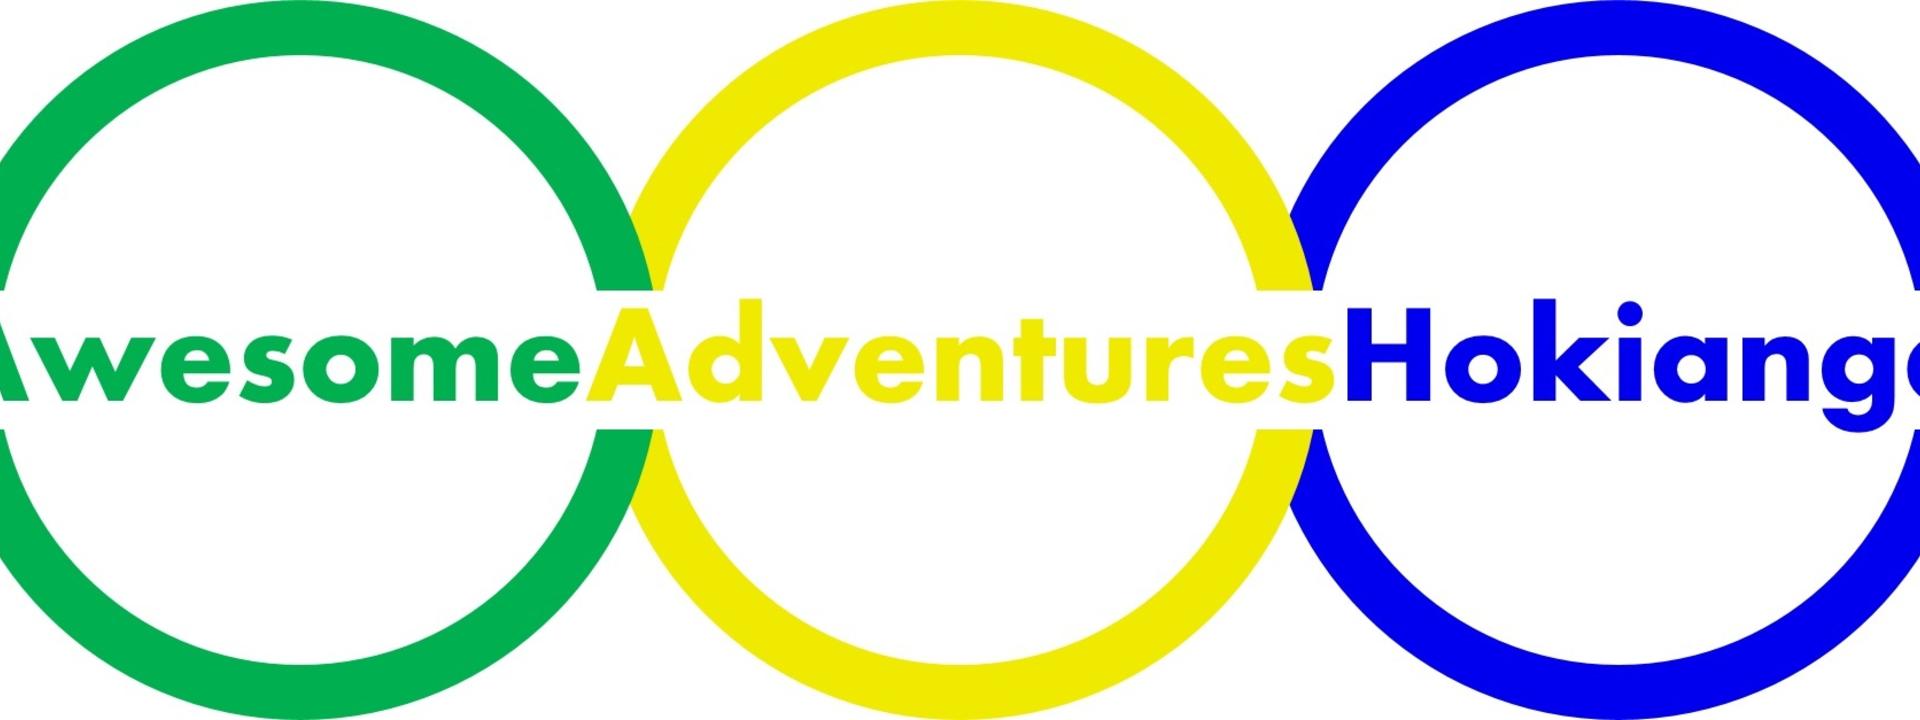 Logo: Awesome Adventures Hokianga